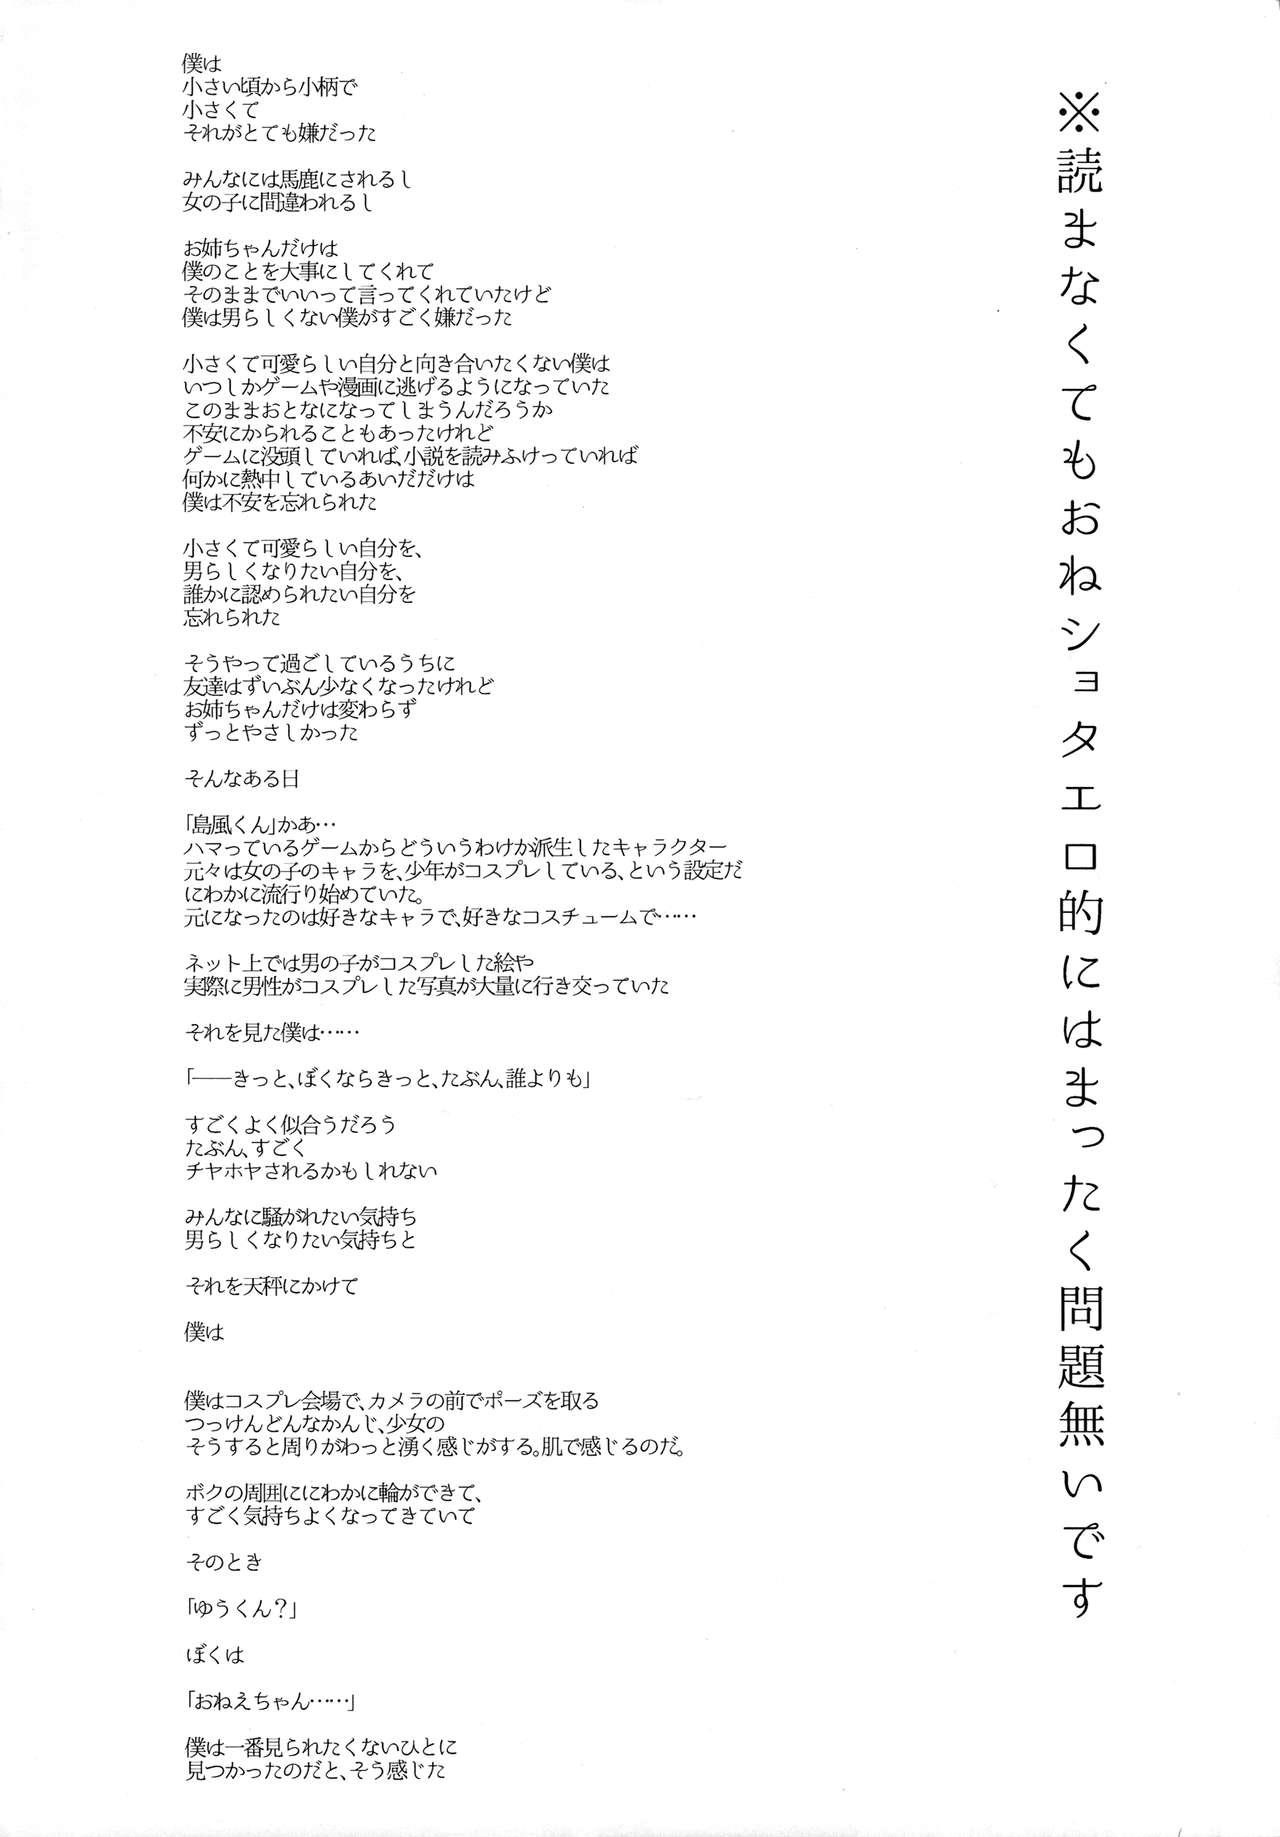 Josou Shounen case 01. "Shimakazechan" 4